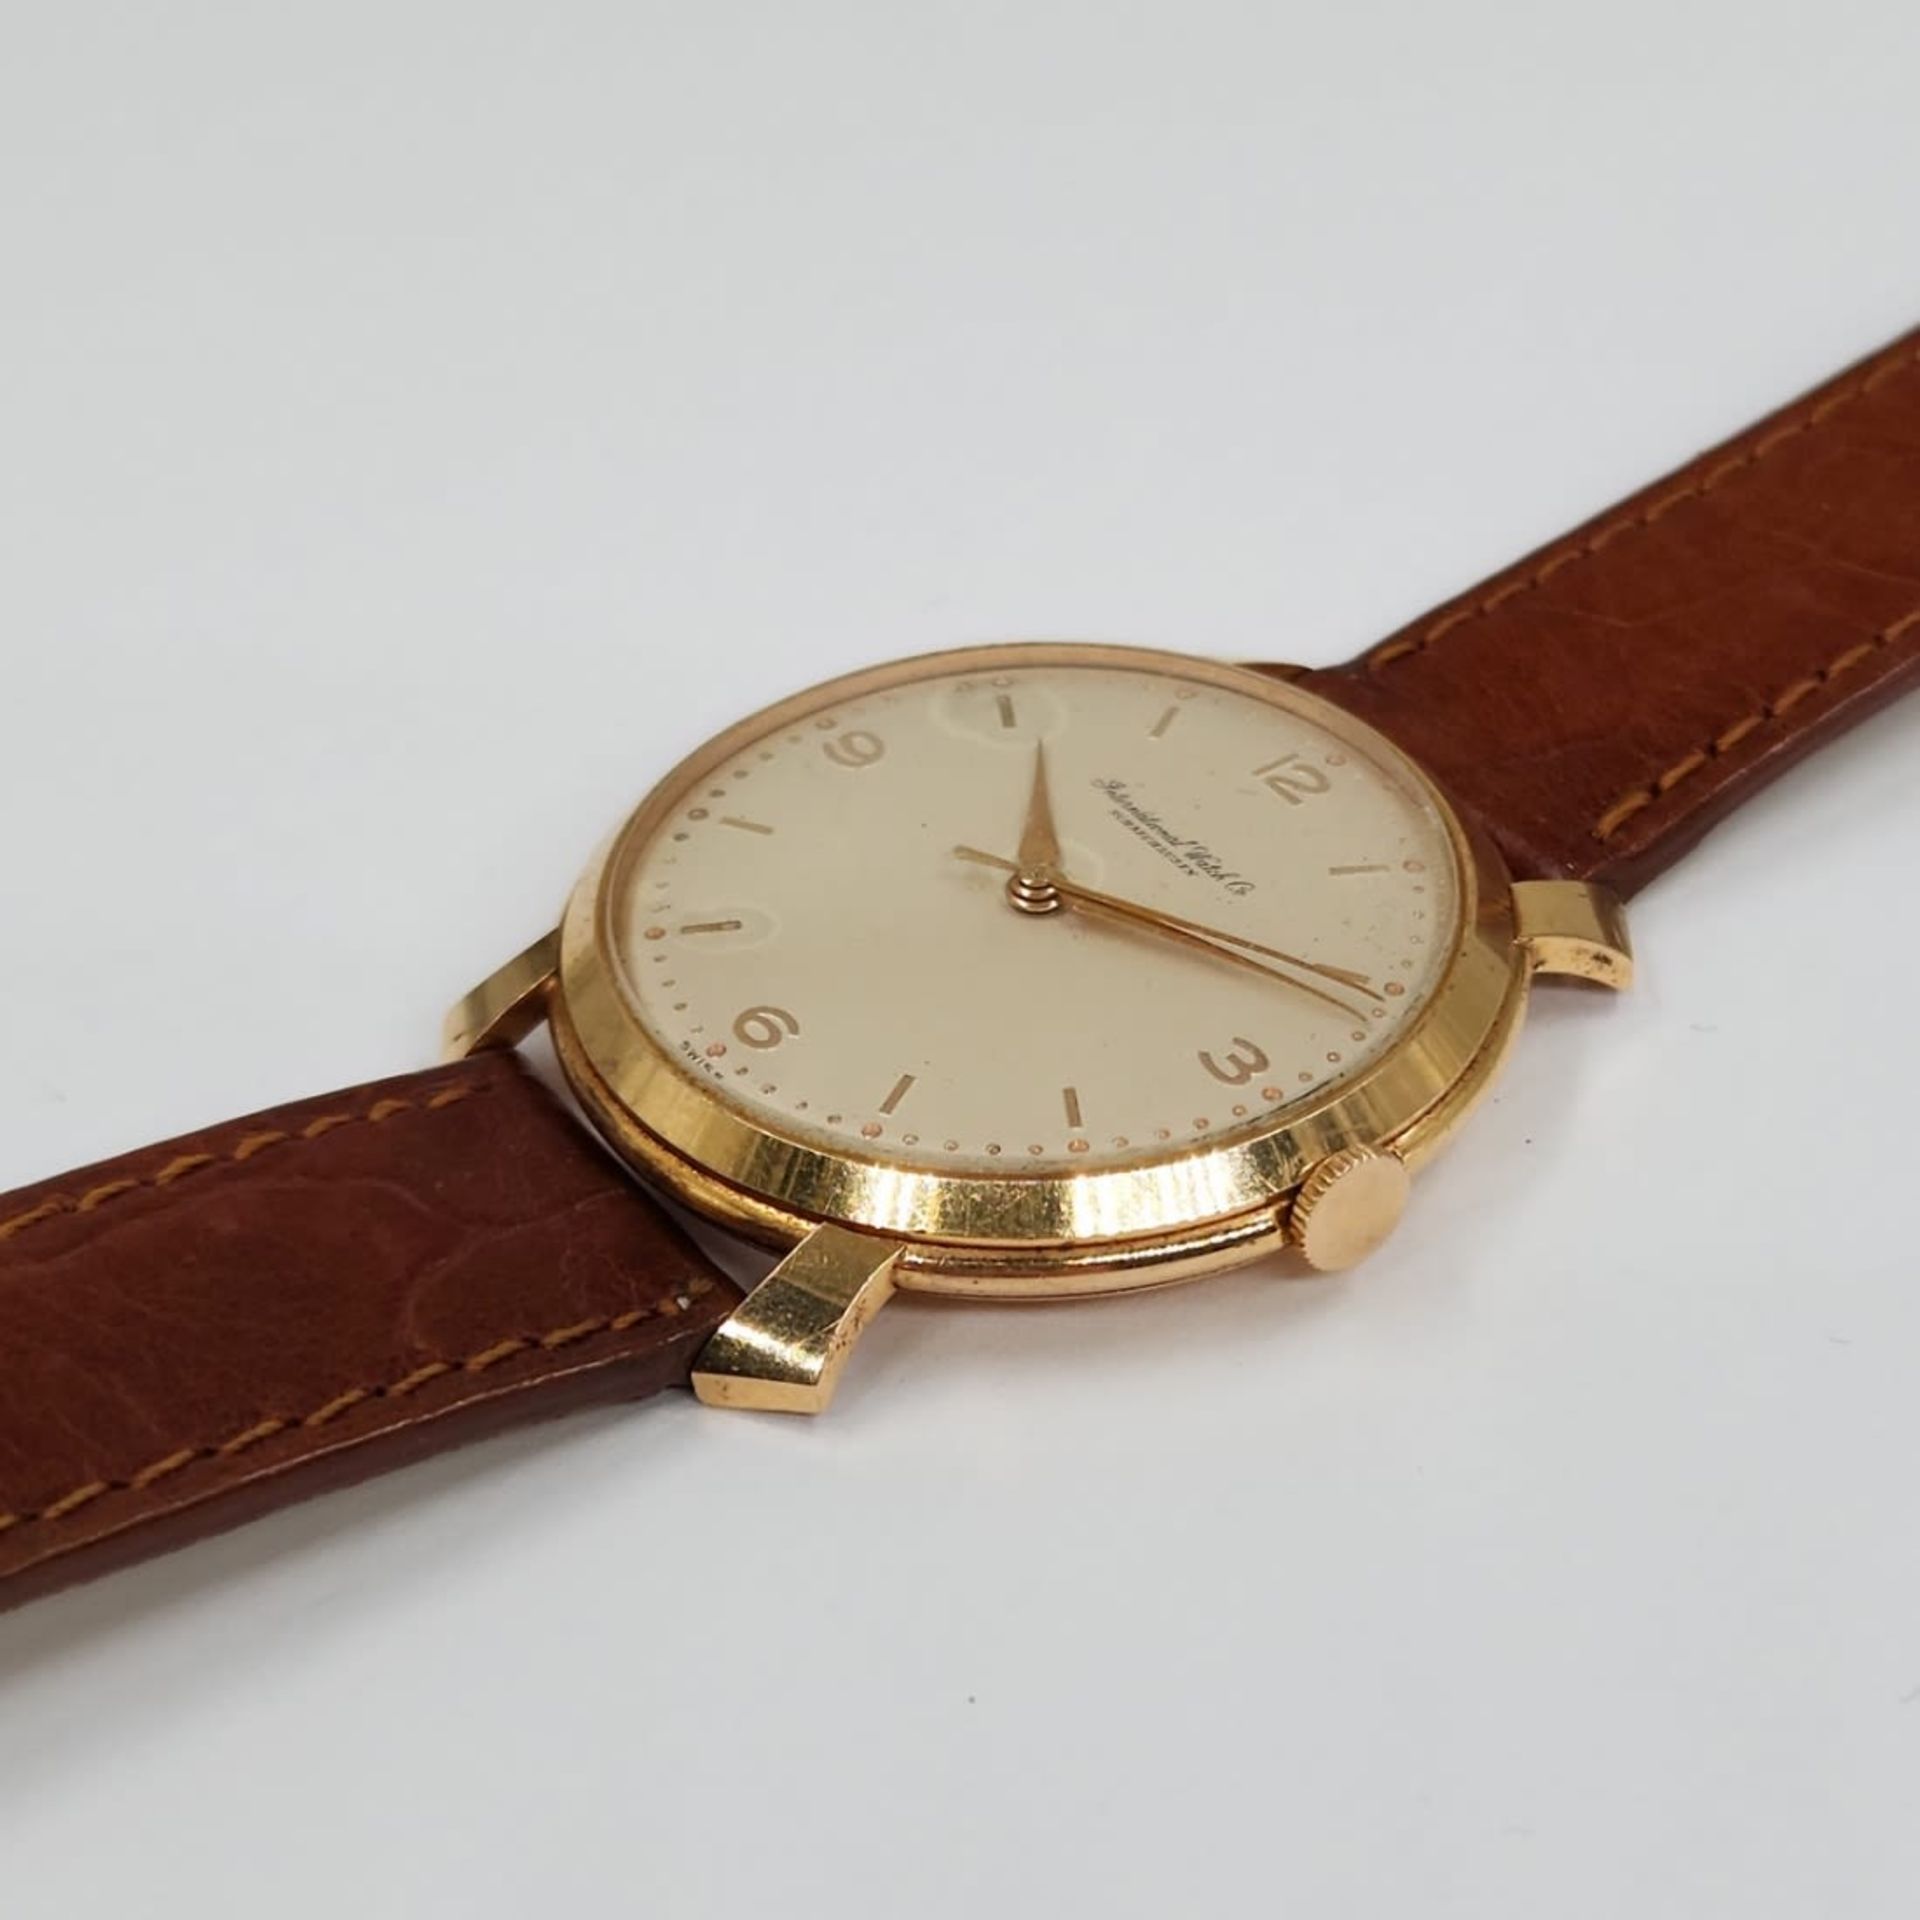 Wristwatch for men made by: 'Schaffhausen', 14k yellow gold, brown leather strap, working - Bild 2 aus 4